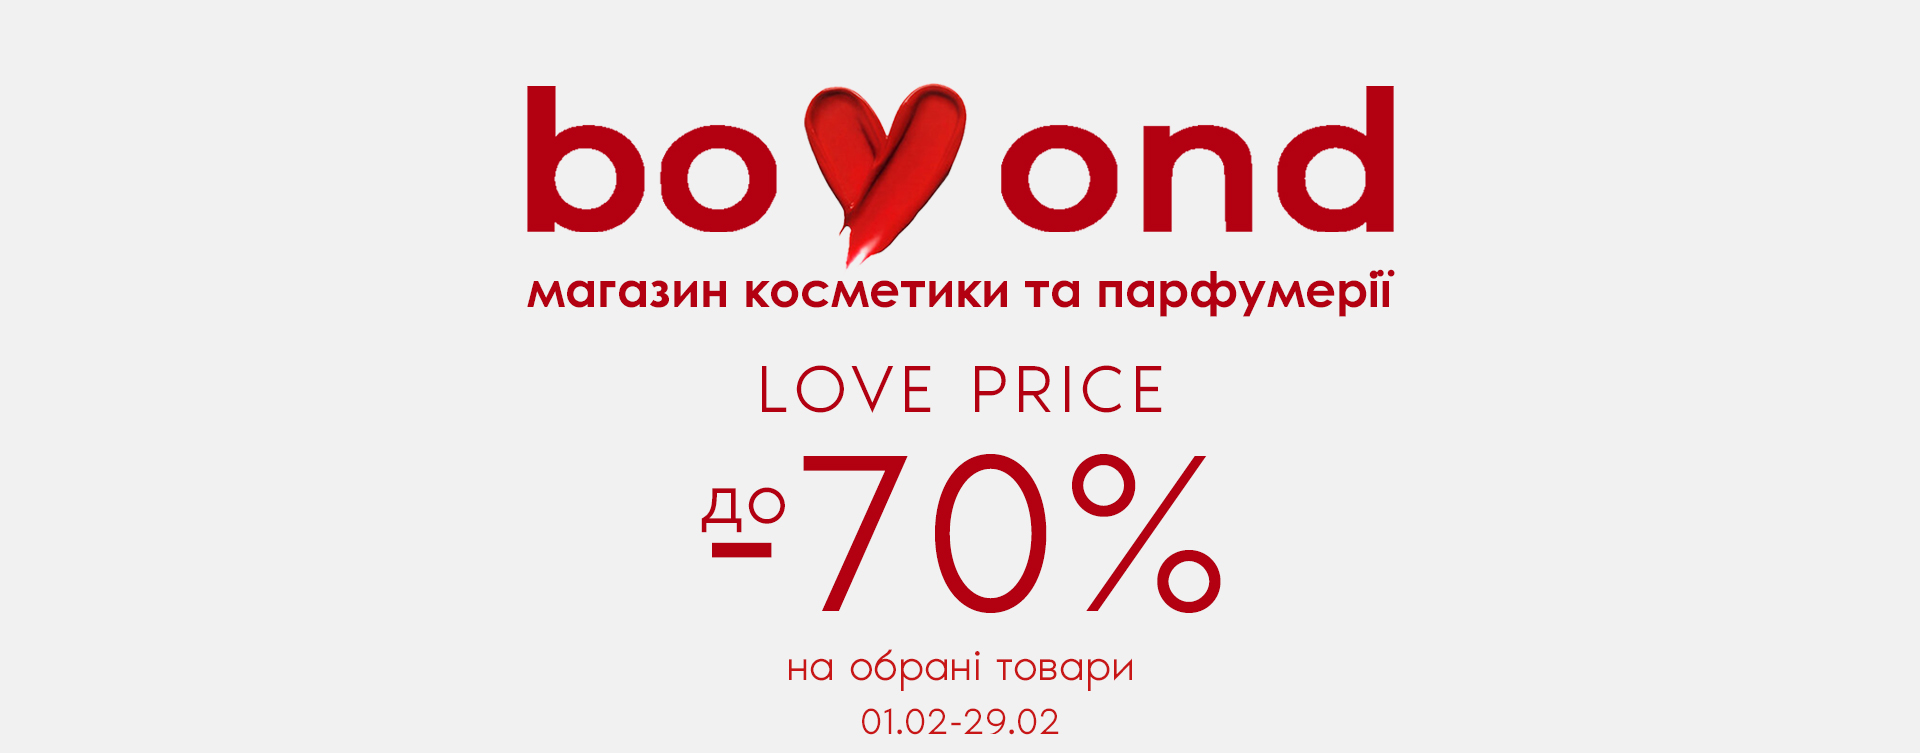 LOVE Price Bomond зі знижками до -70%